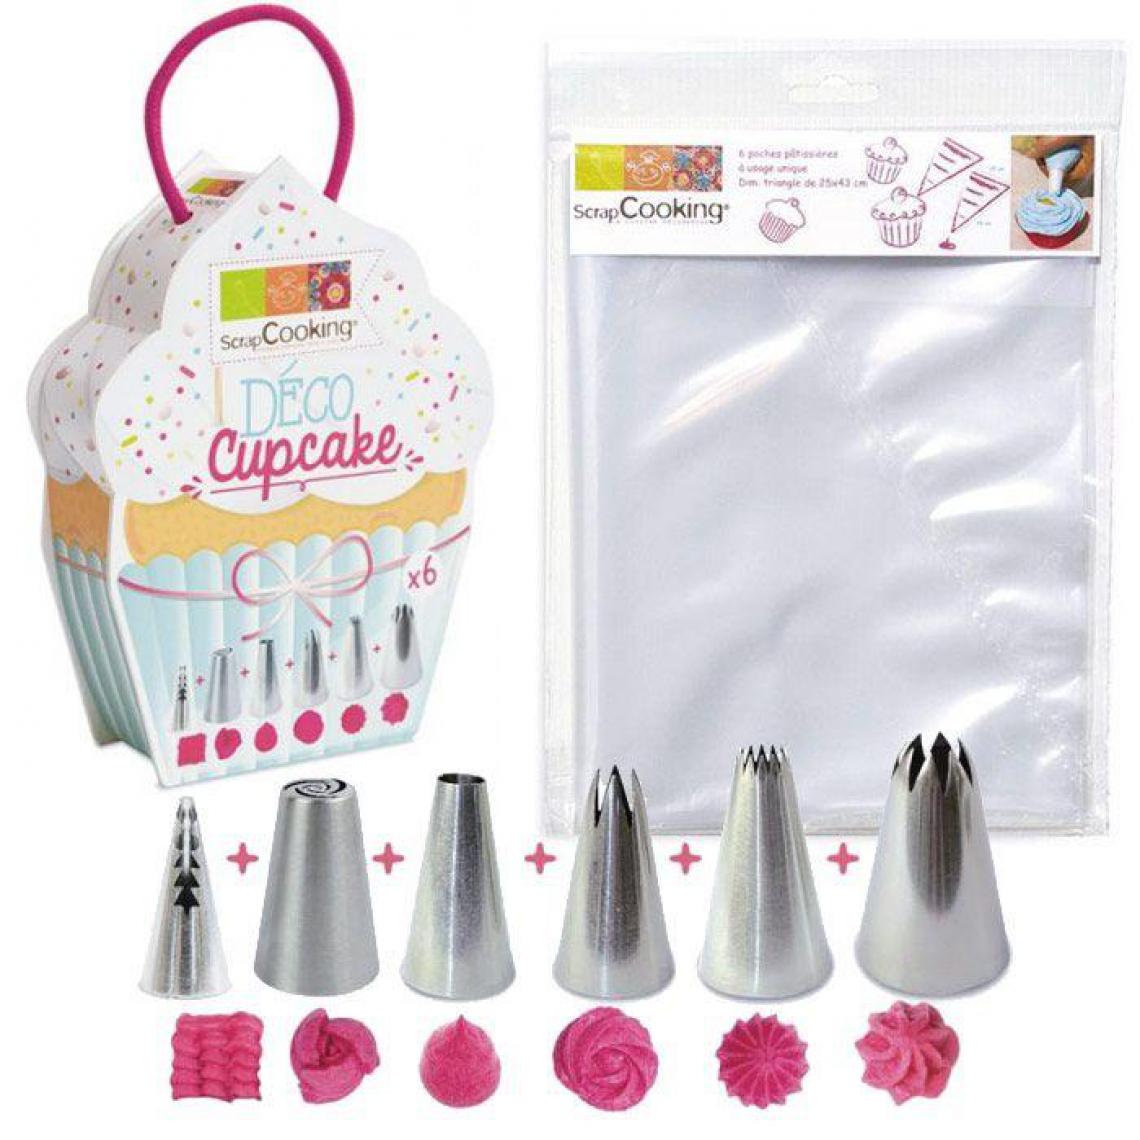 Scrapcooking - 6 douilles et 6 poches à douilles jetables pour Cupcakes - Kits créatifs